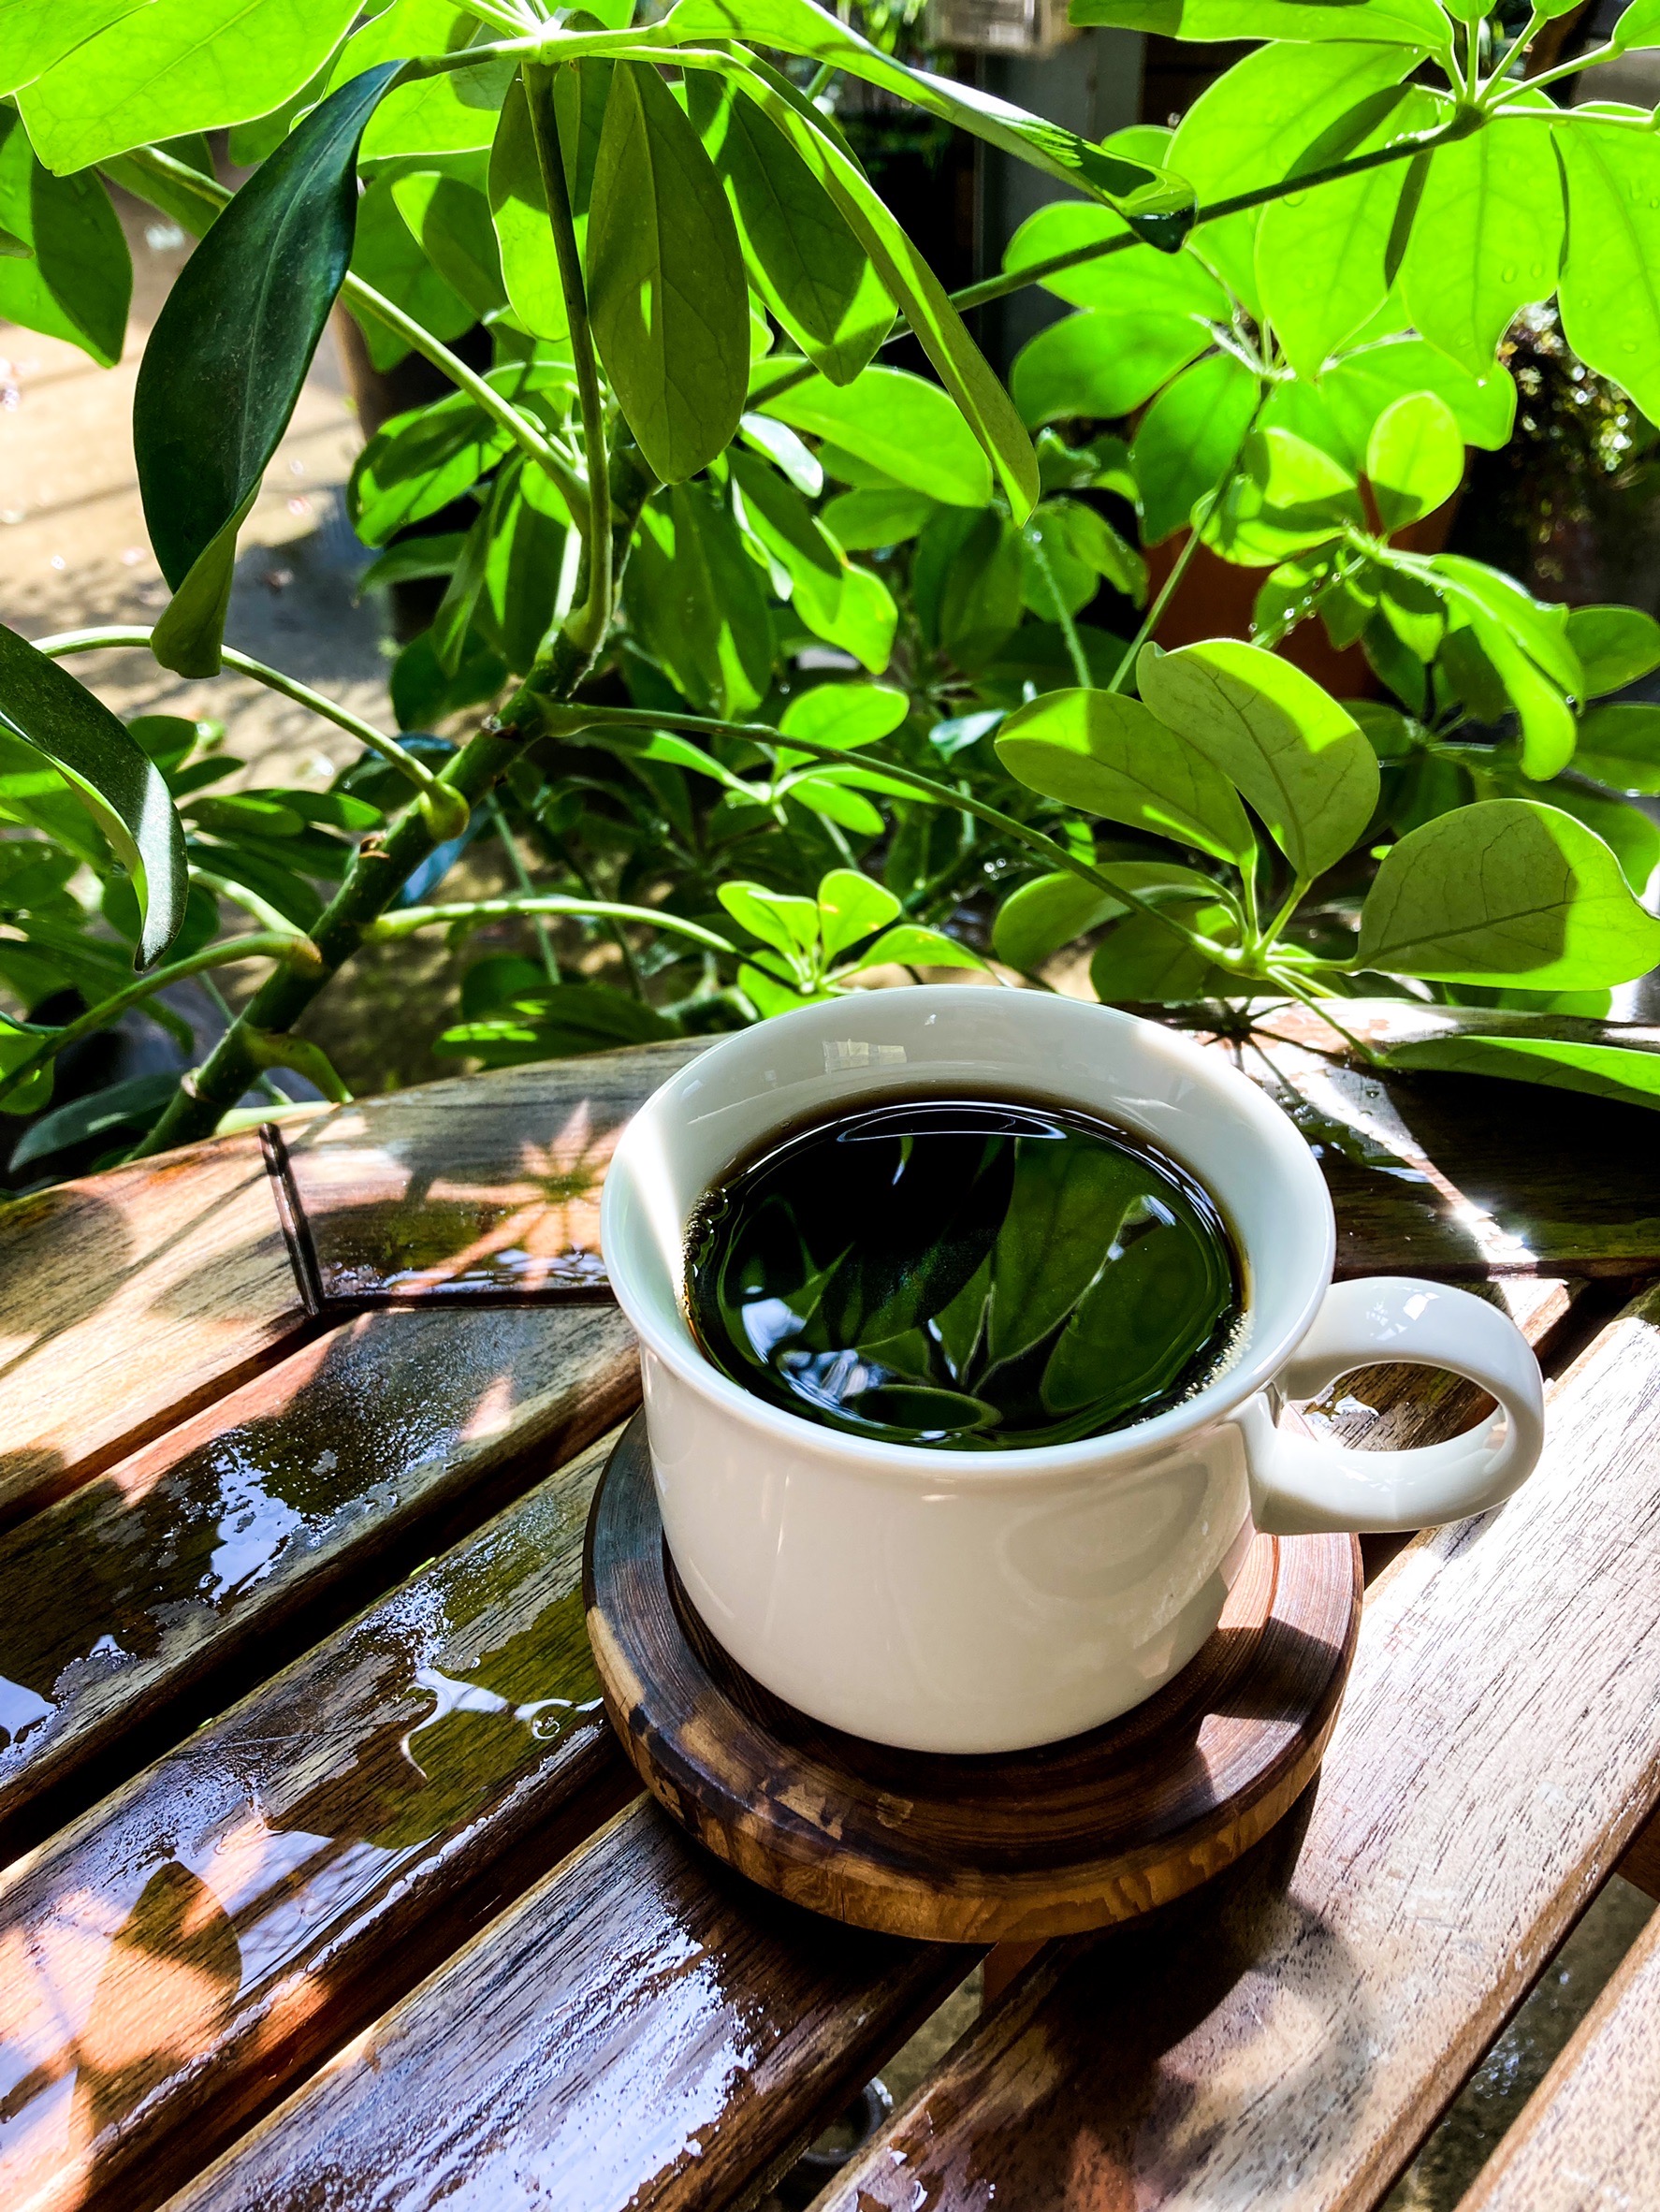 【10/4(火)より】コーヒー・紅茶、価格改定のお知らせ